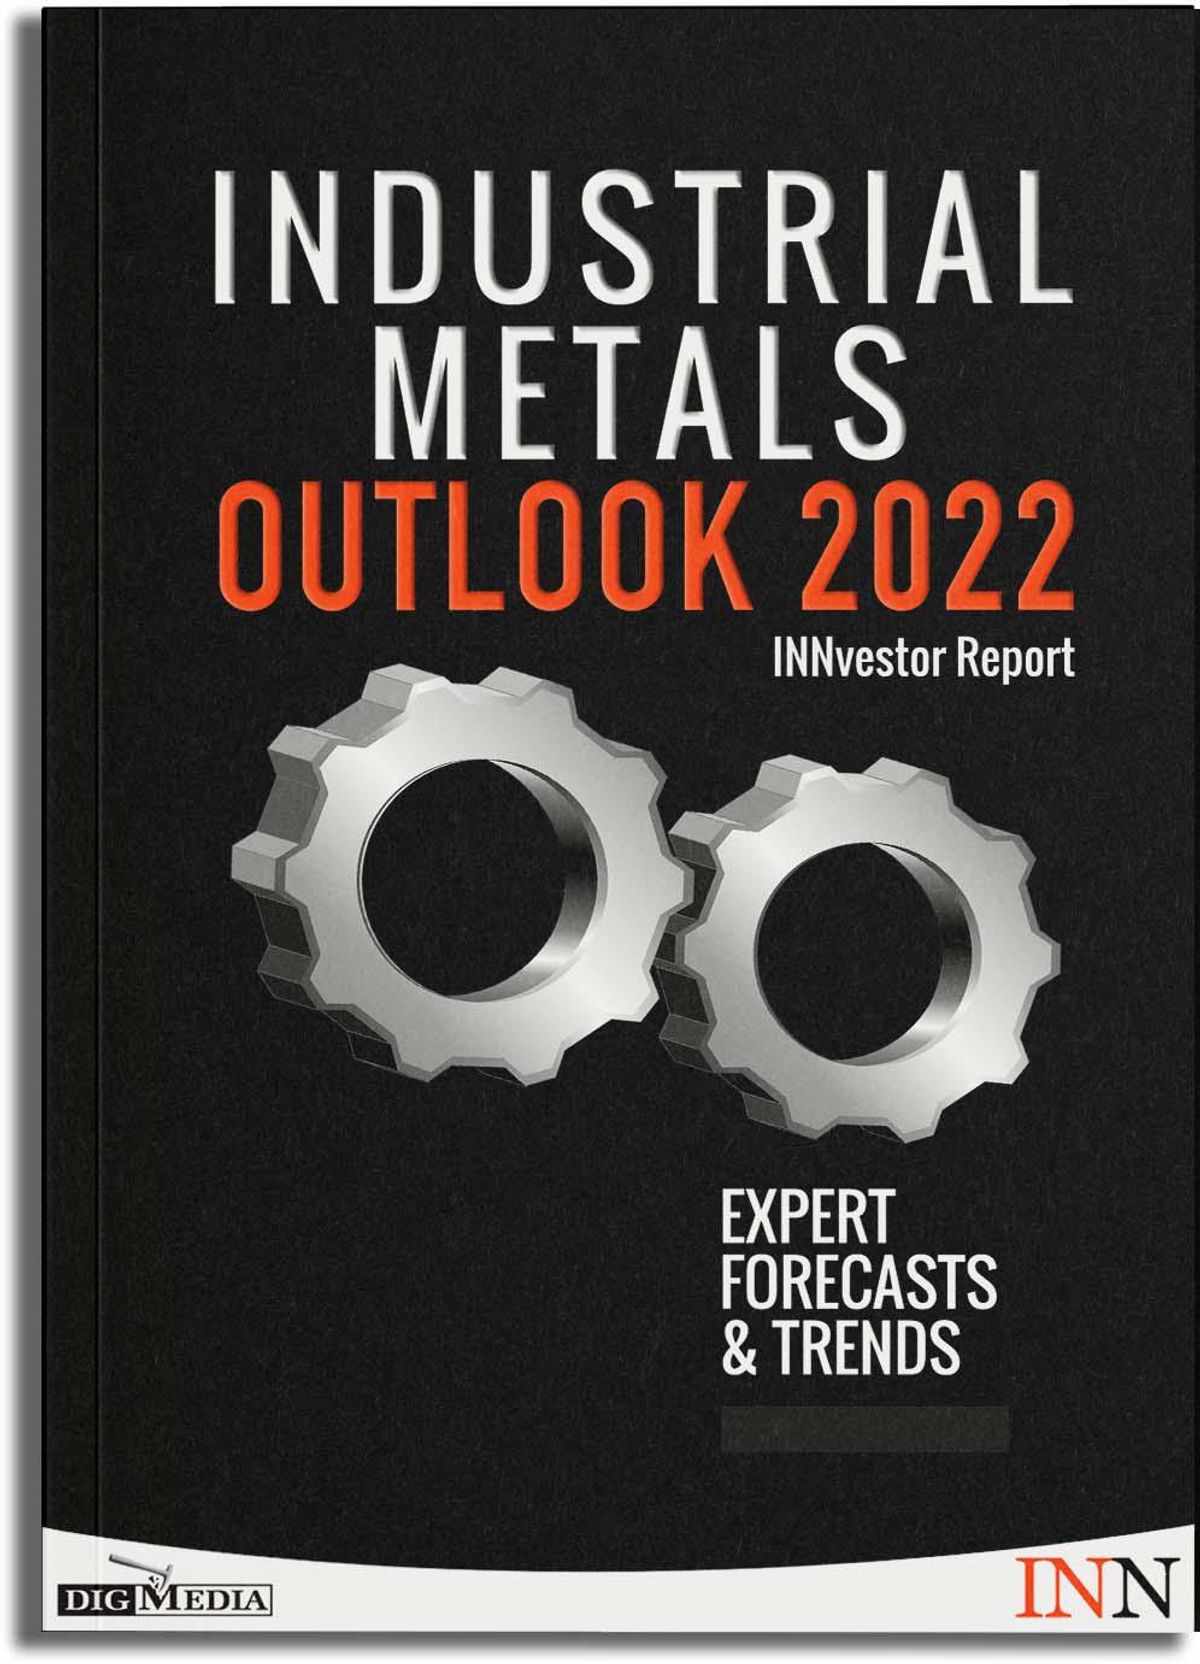 NEW! Download Your 2022 Industrial Metals Outlook Report.